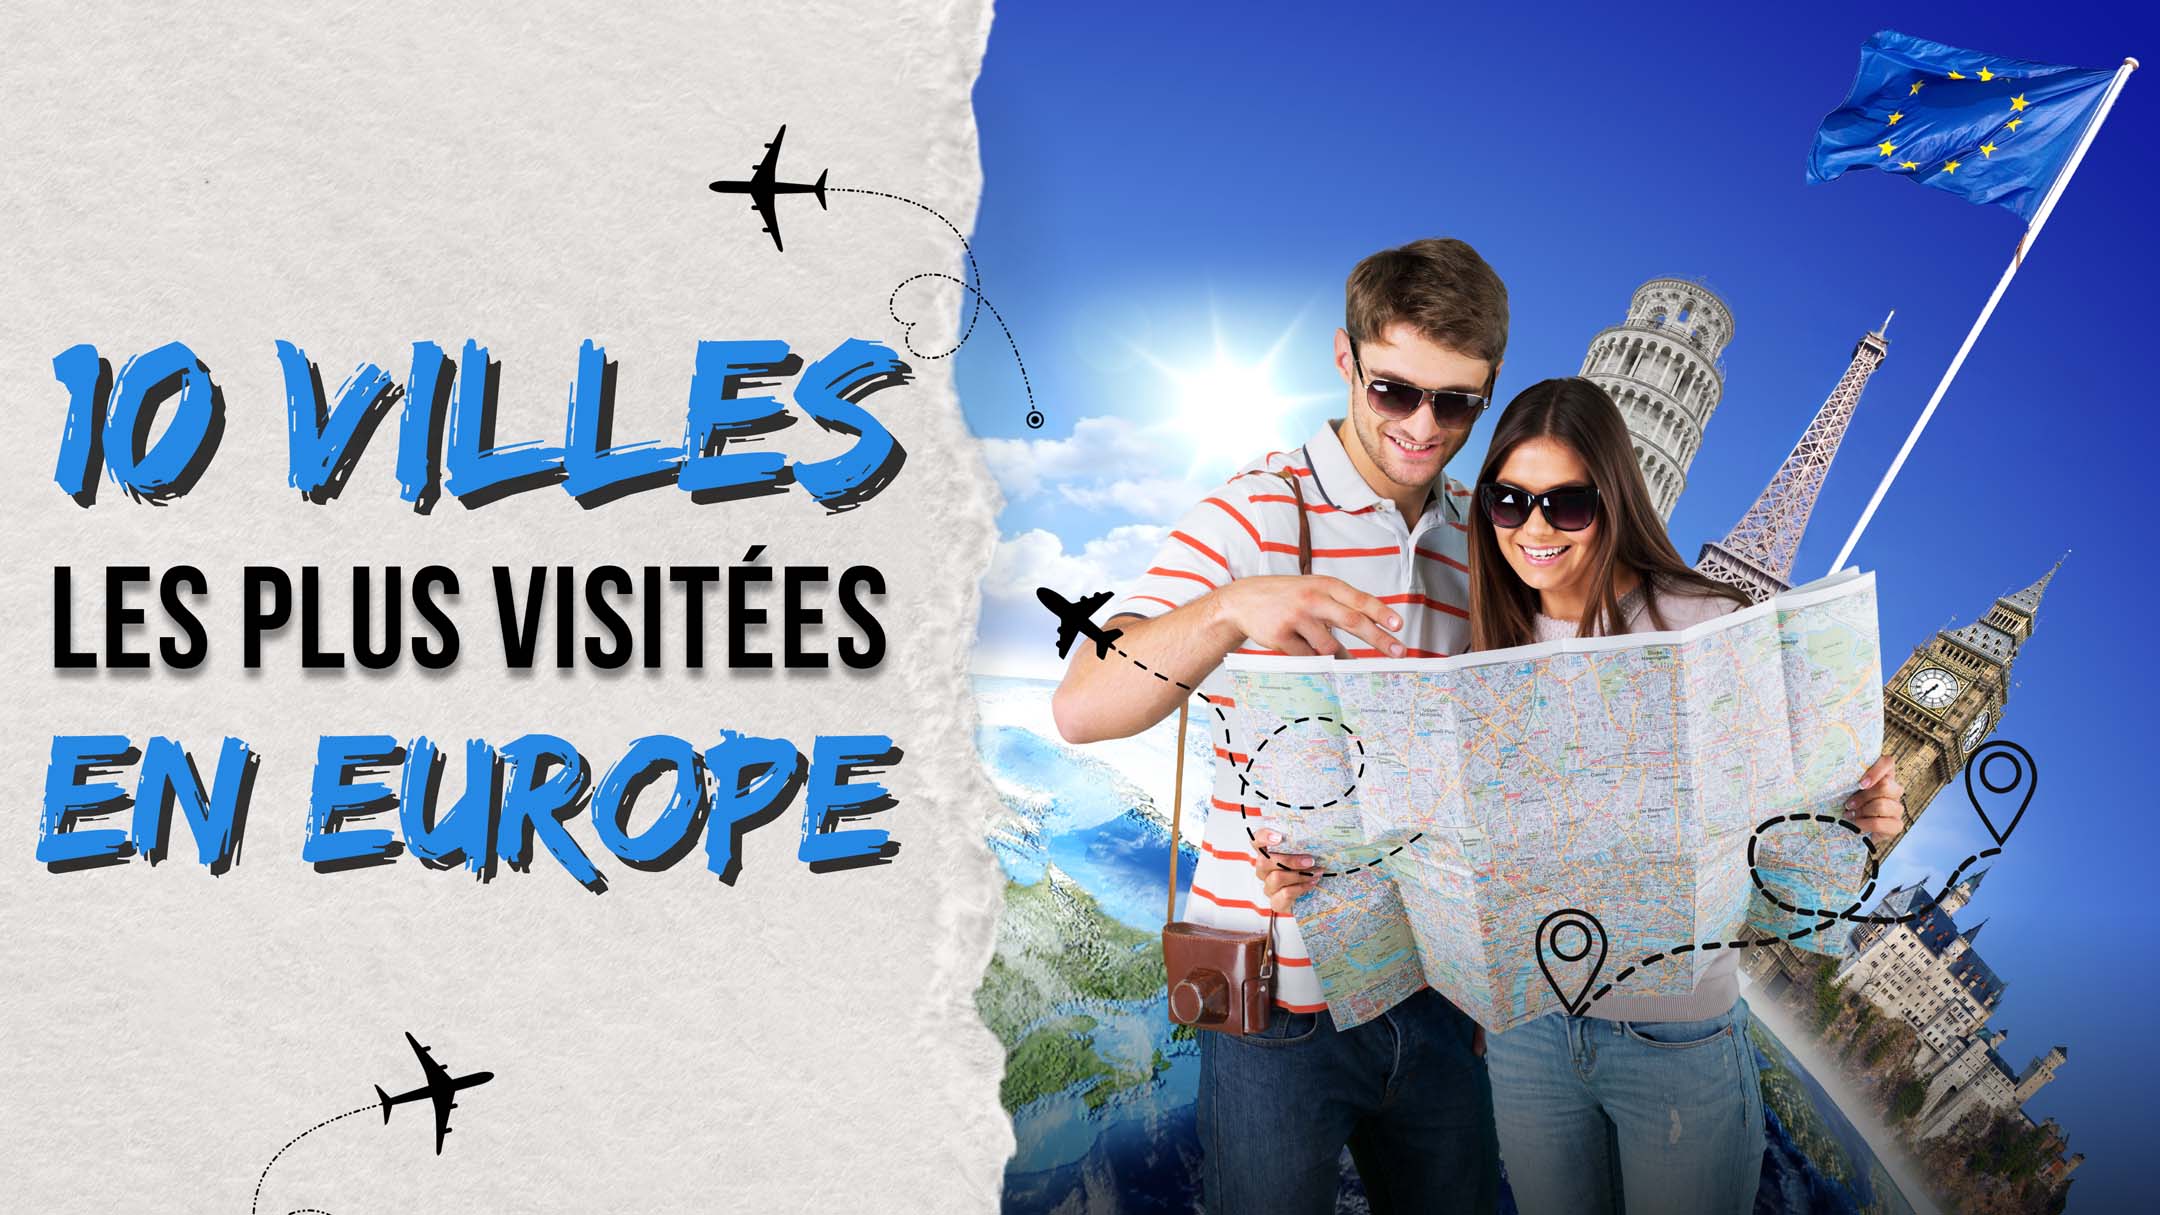 10 villes les plus visitées en Europe